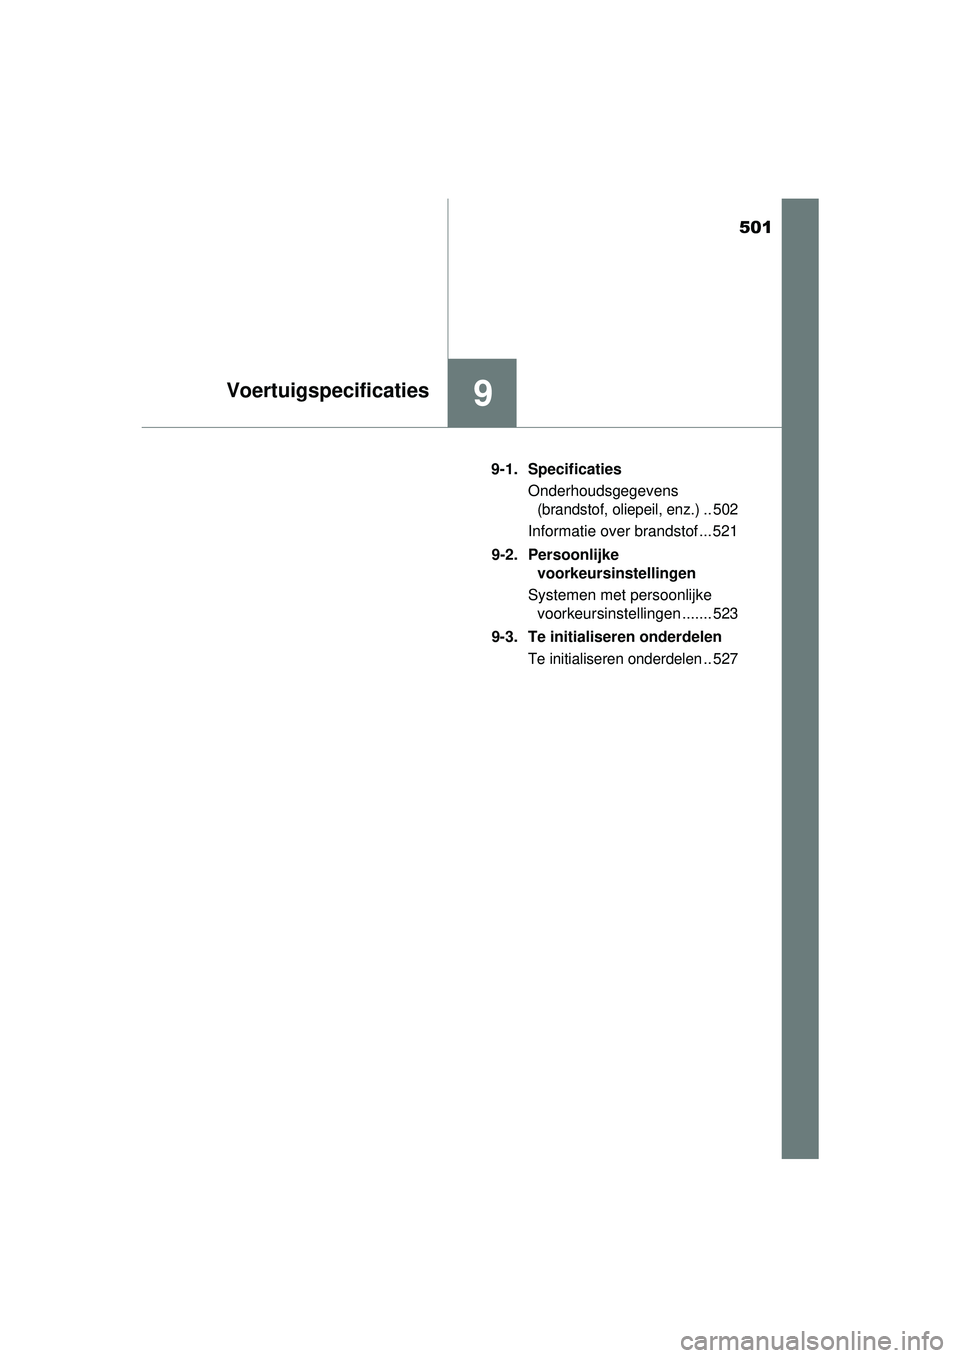 TOYOTA YARIS HATCHBACK 2016  Instructieboekje (in Dutch) 501
9Voertuigspecificaties
YARIS_F_OM_Europe_OM52G66E9-1. Specificaties
Onderhoudsgegevens 
(brandstof, oliepeil, enz.).. 502
Informatie over brandstof ... 521
9-2. Persoonlijke  voorkeursinstellingen